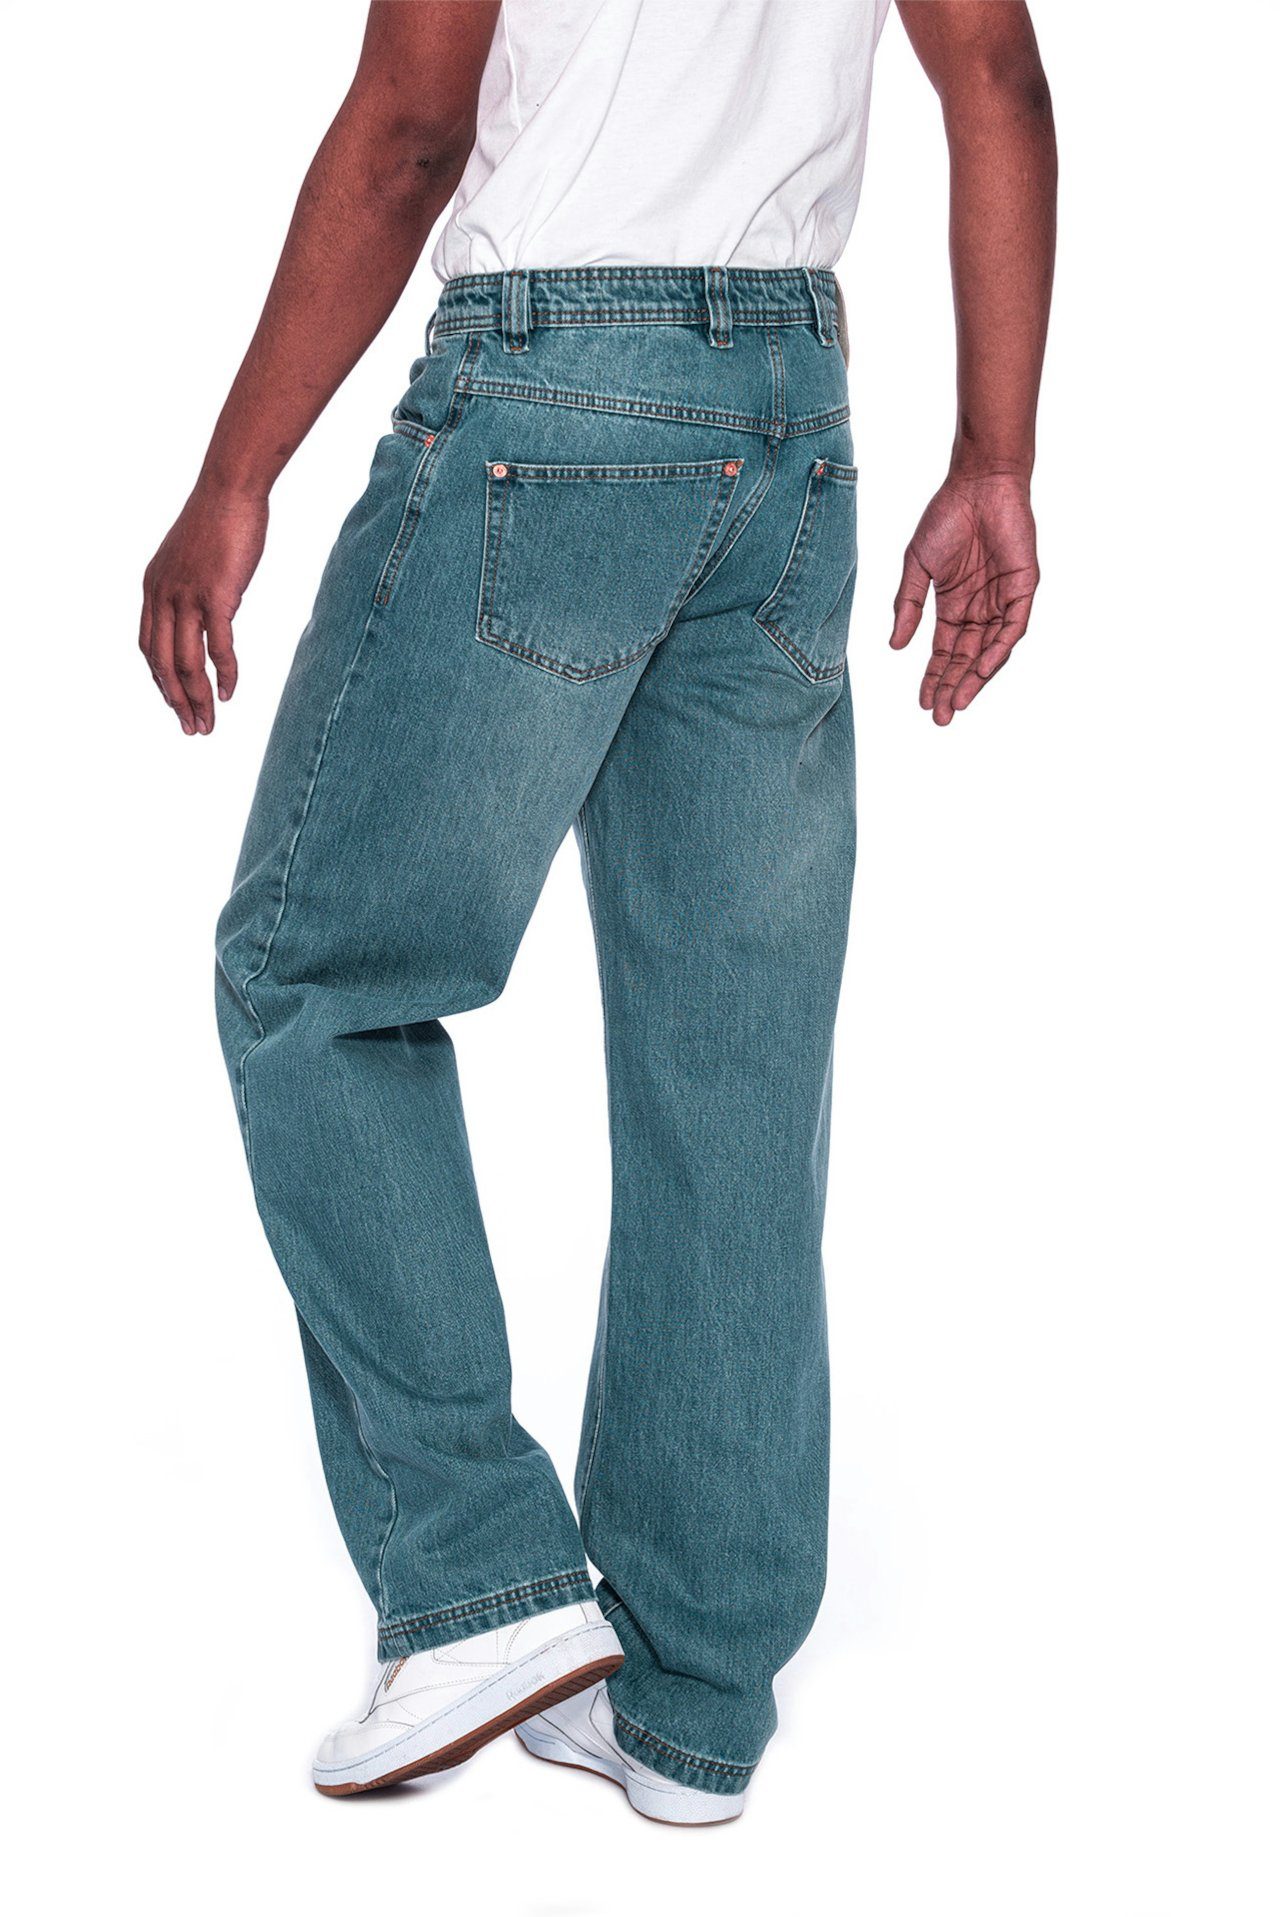 Jeans Straight Zicco Gerader PICALDI Enemy Leg, Schnitt Weite lässiger Jeans 474 Baggy Fit,